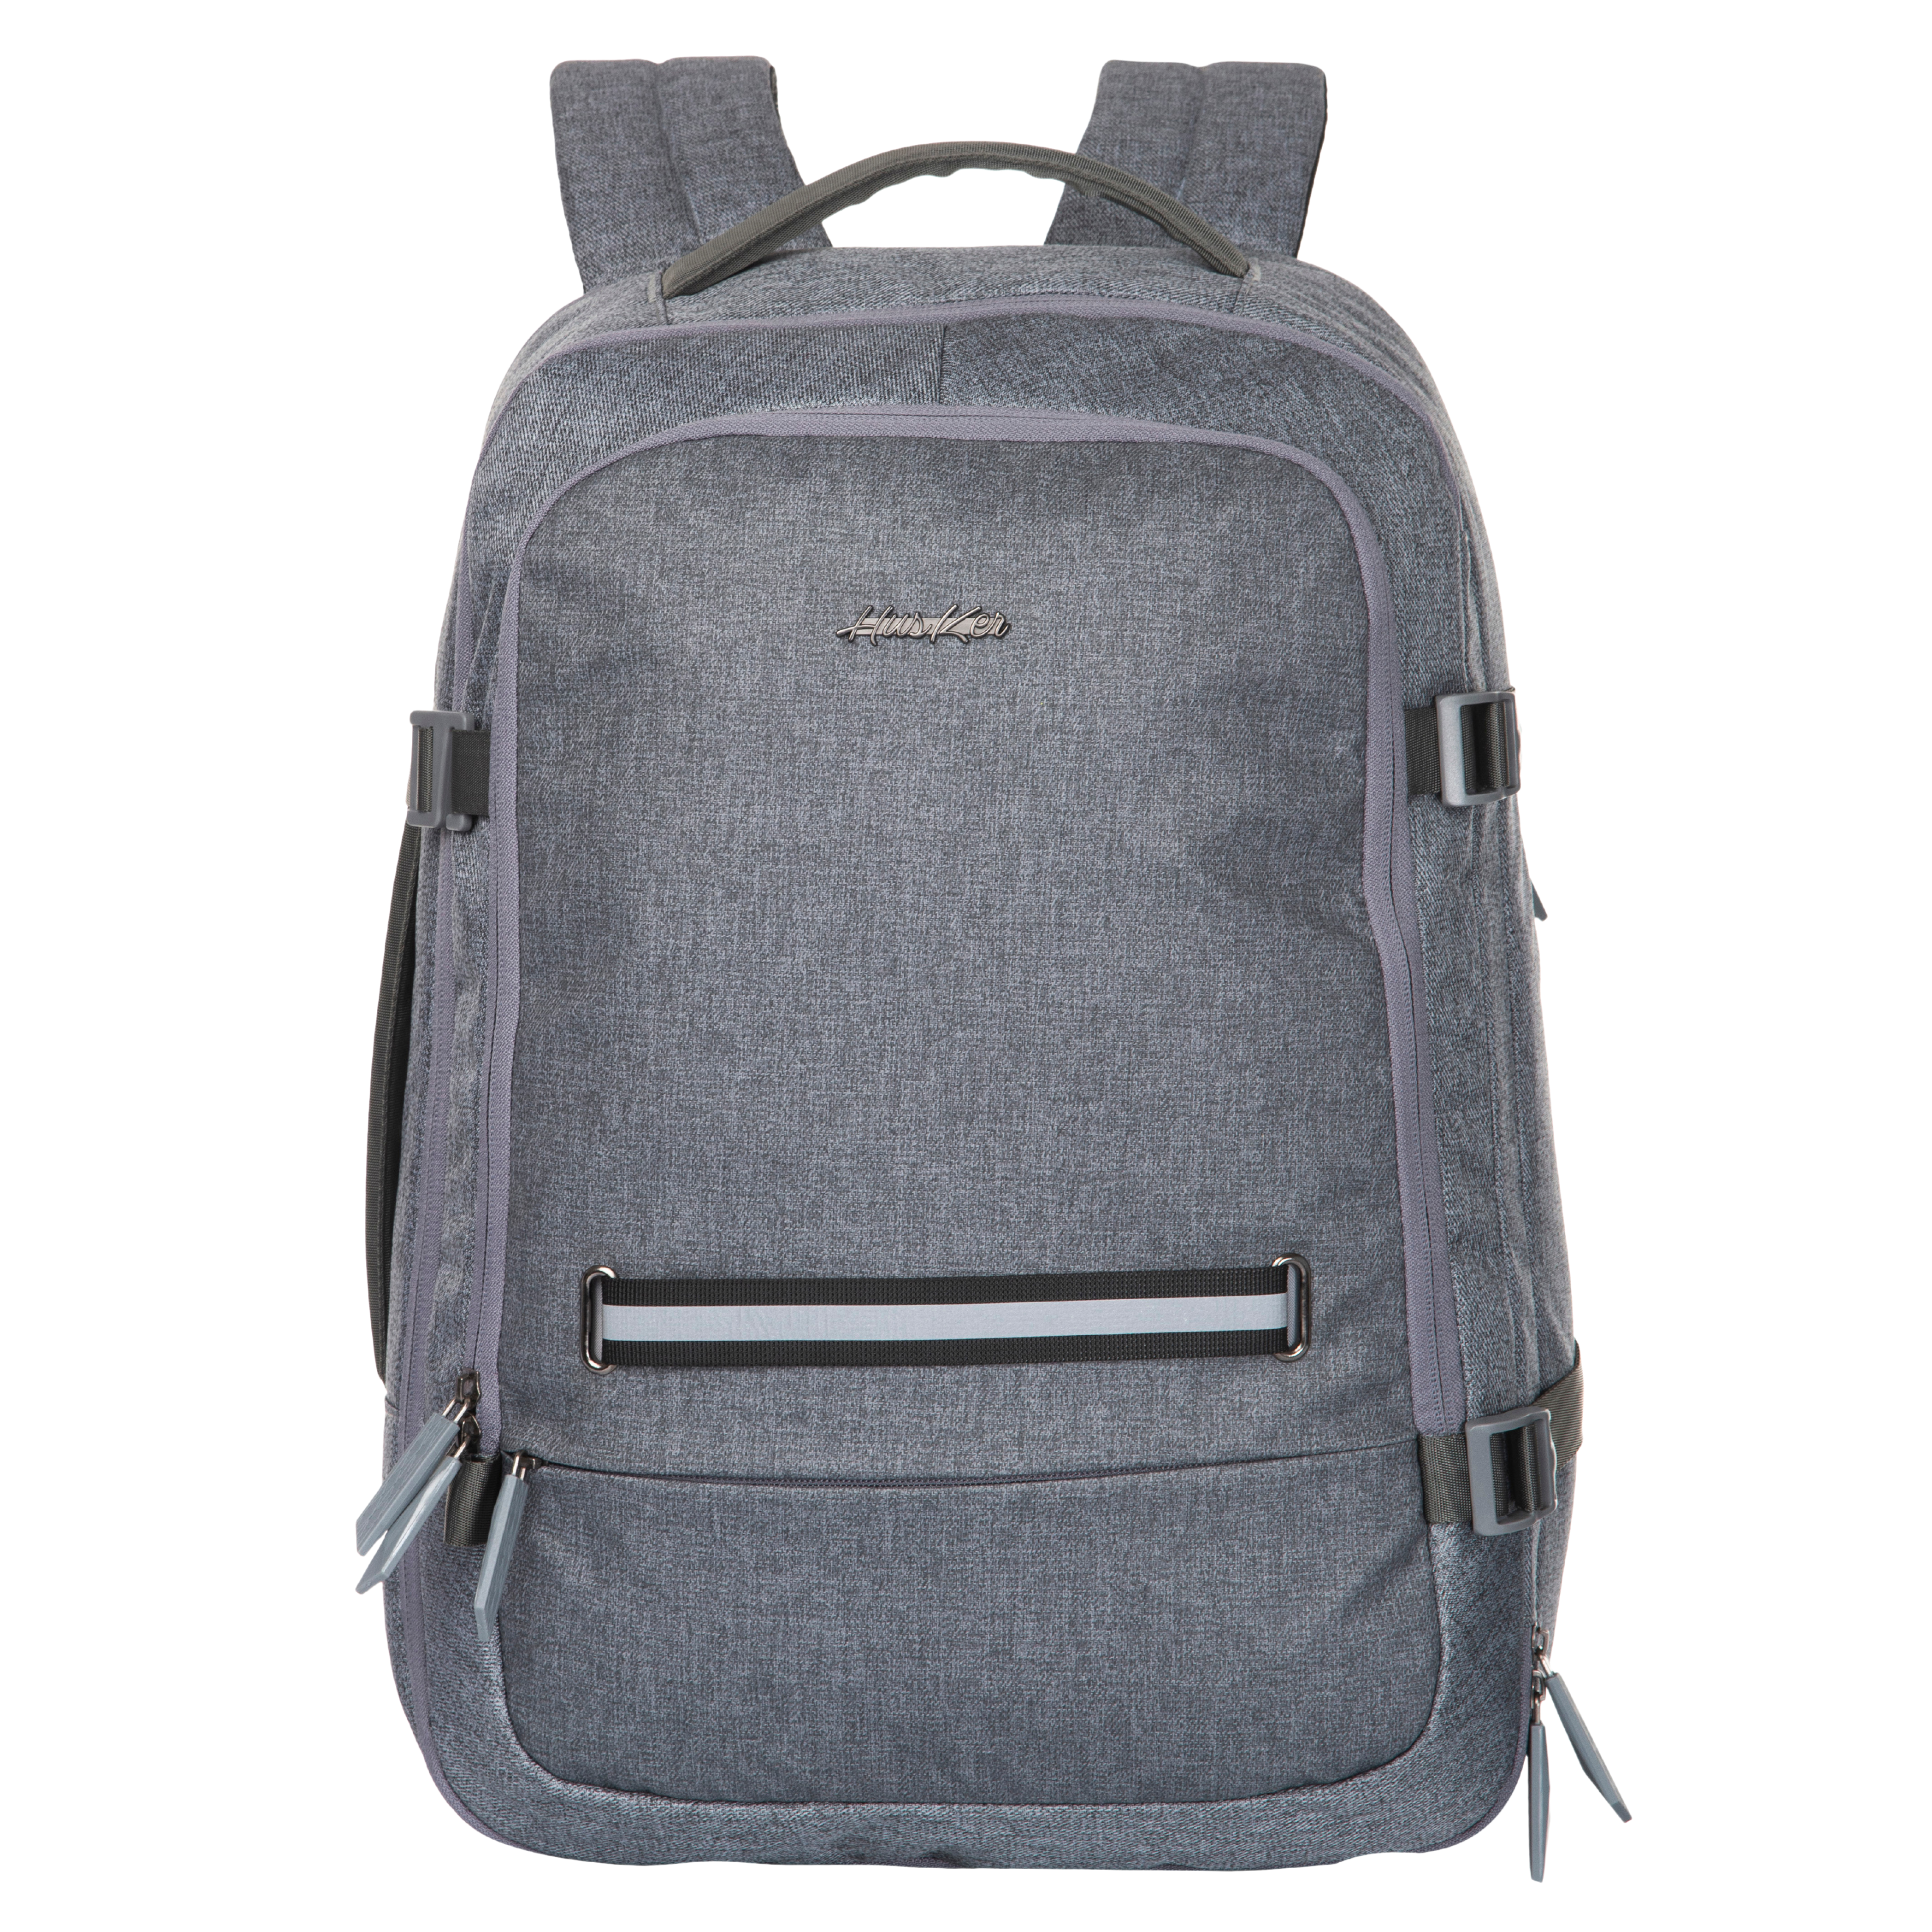 Men's Backpacks: leather, zippered, PC holder